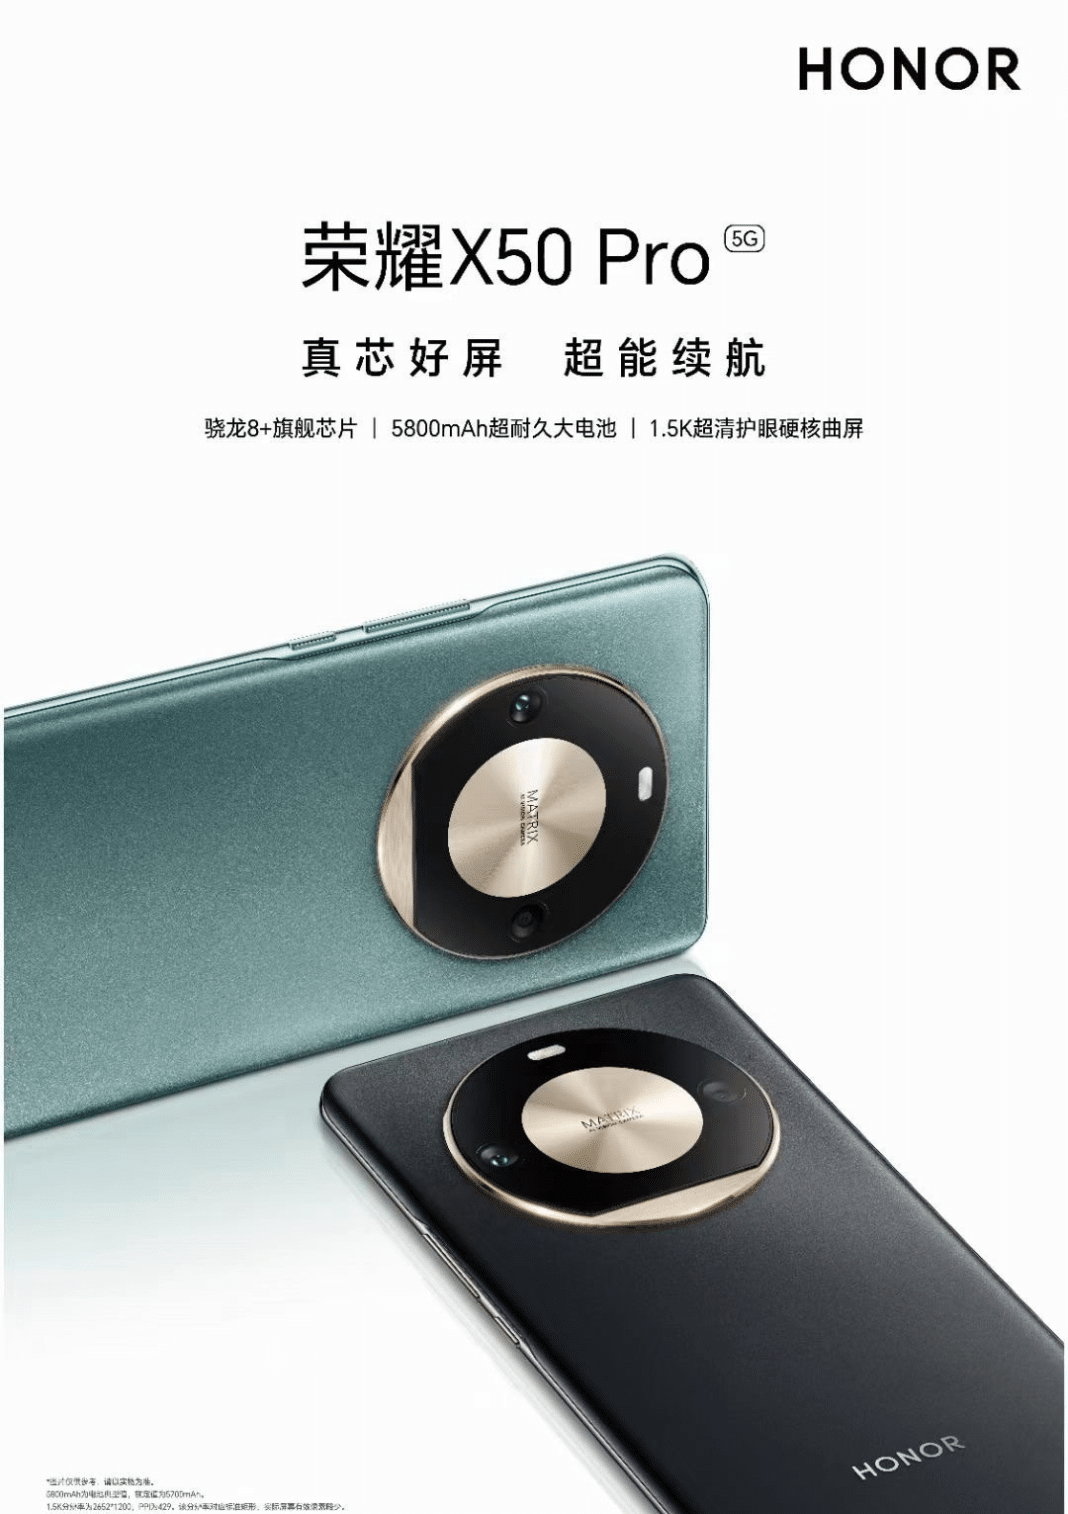 ¡Increíble! El nuevo Honor X50 Pro llega al mercado con una batería de 5.800 mAh